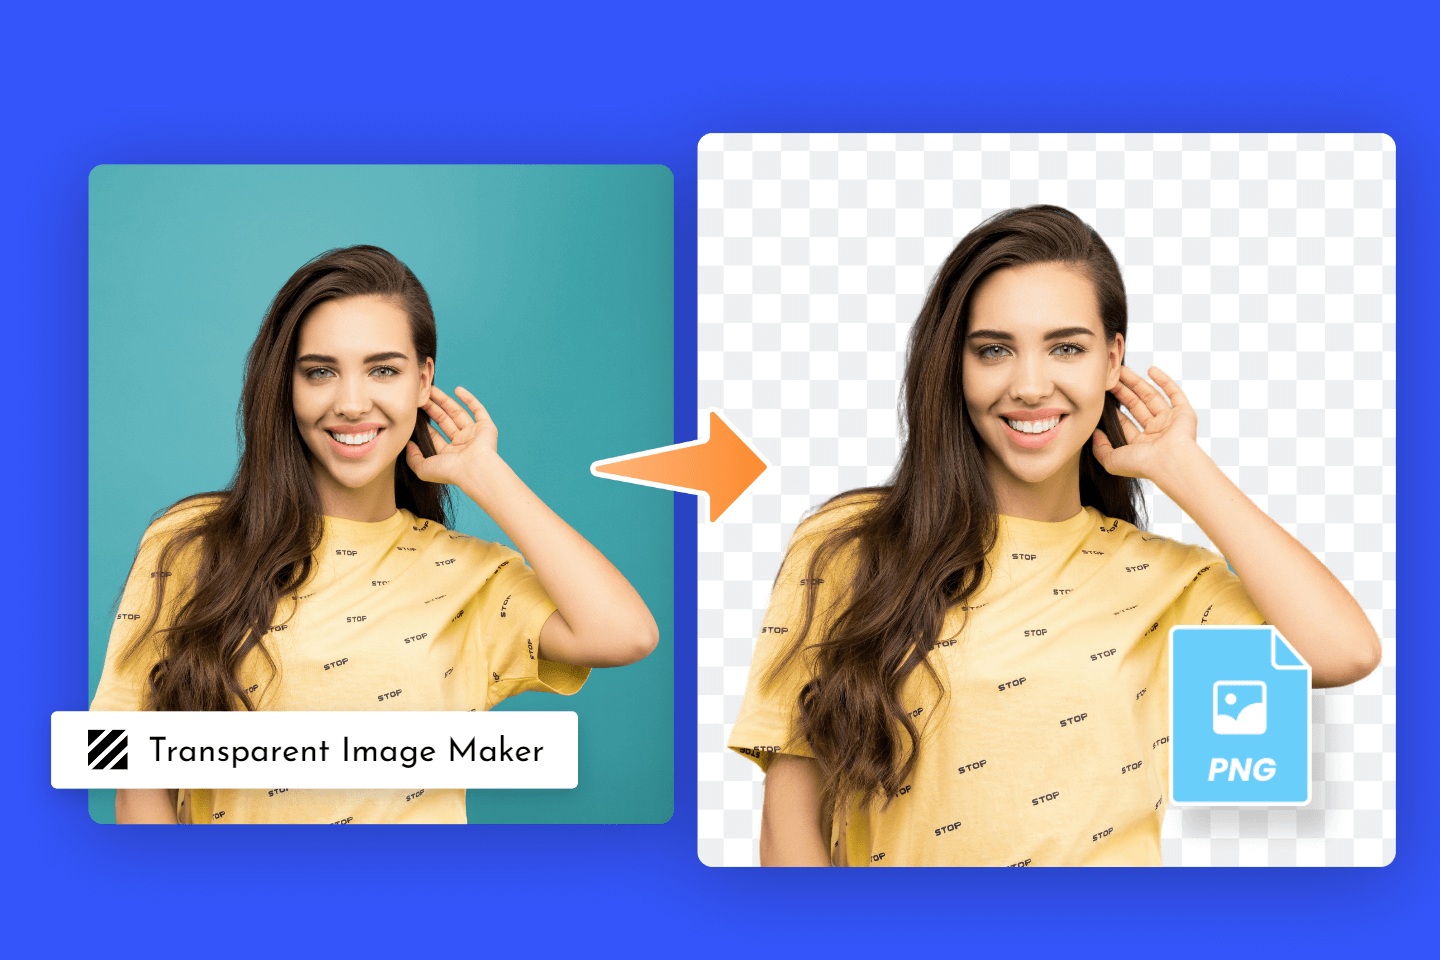 Transparent Image Maker: Make Background Transparent Online| Fotor